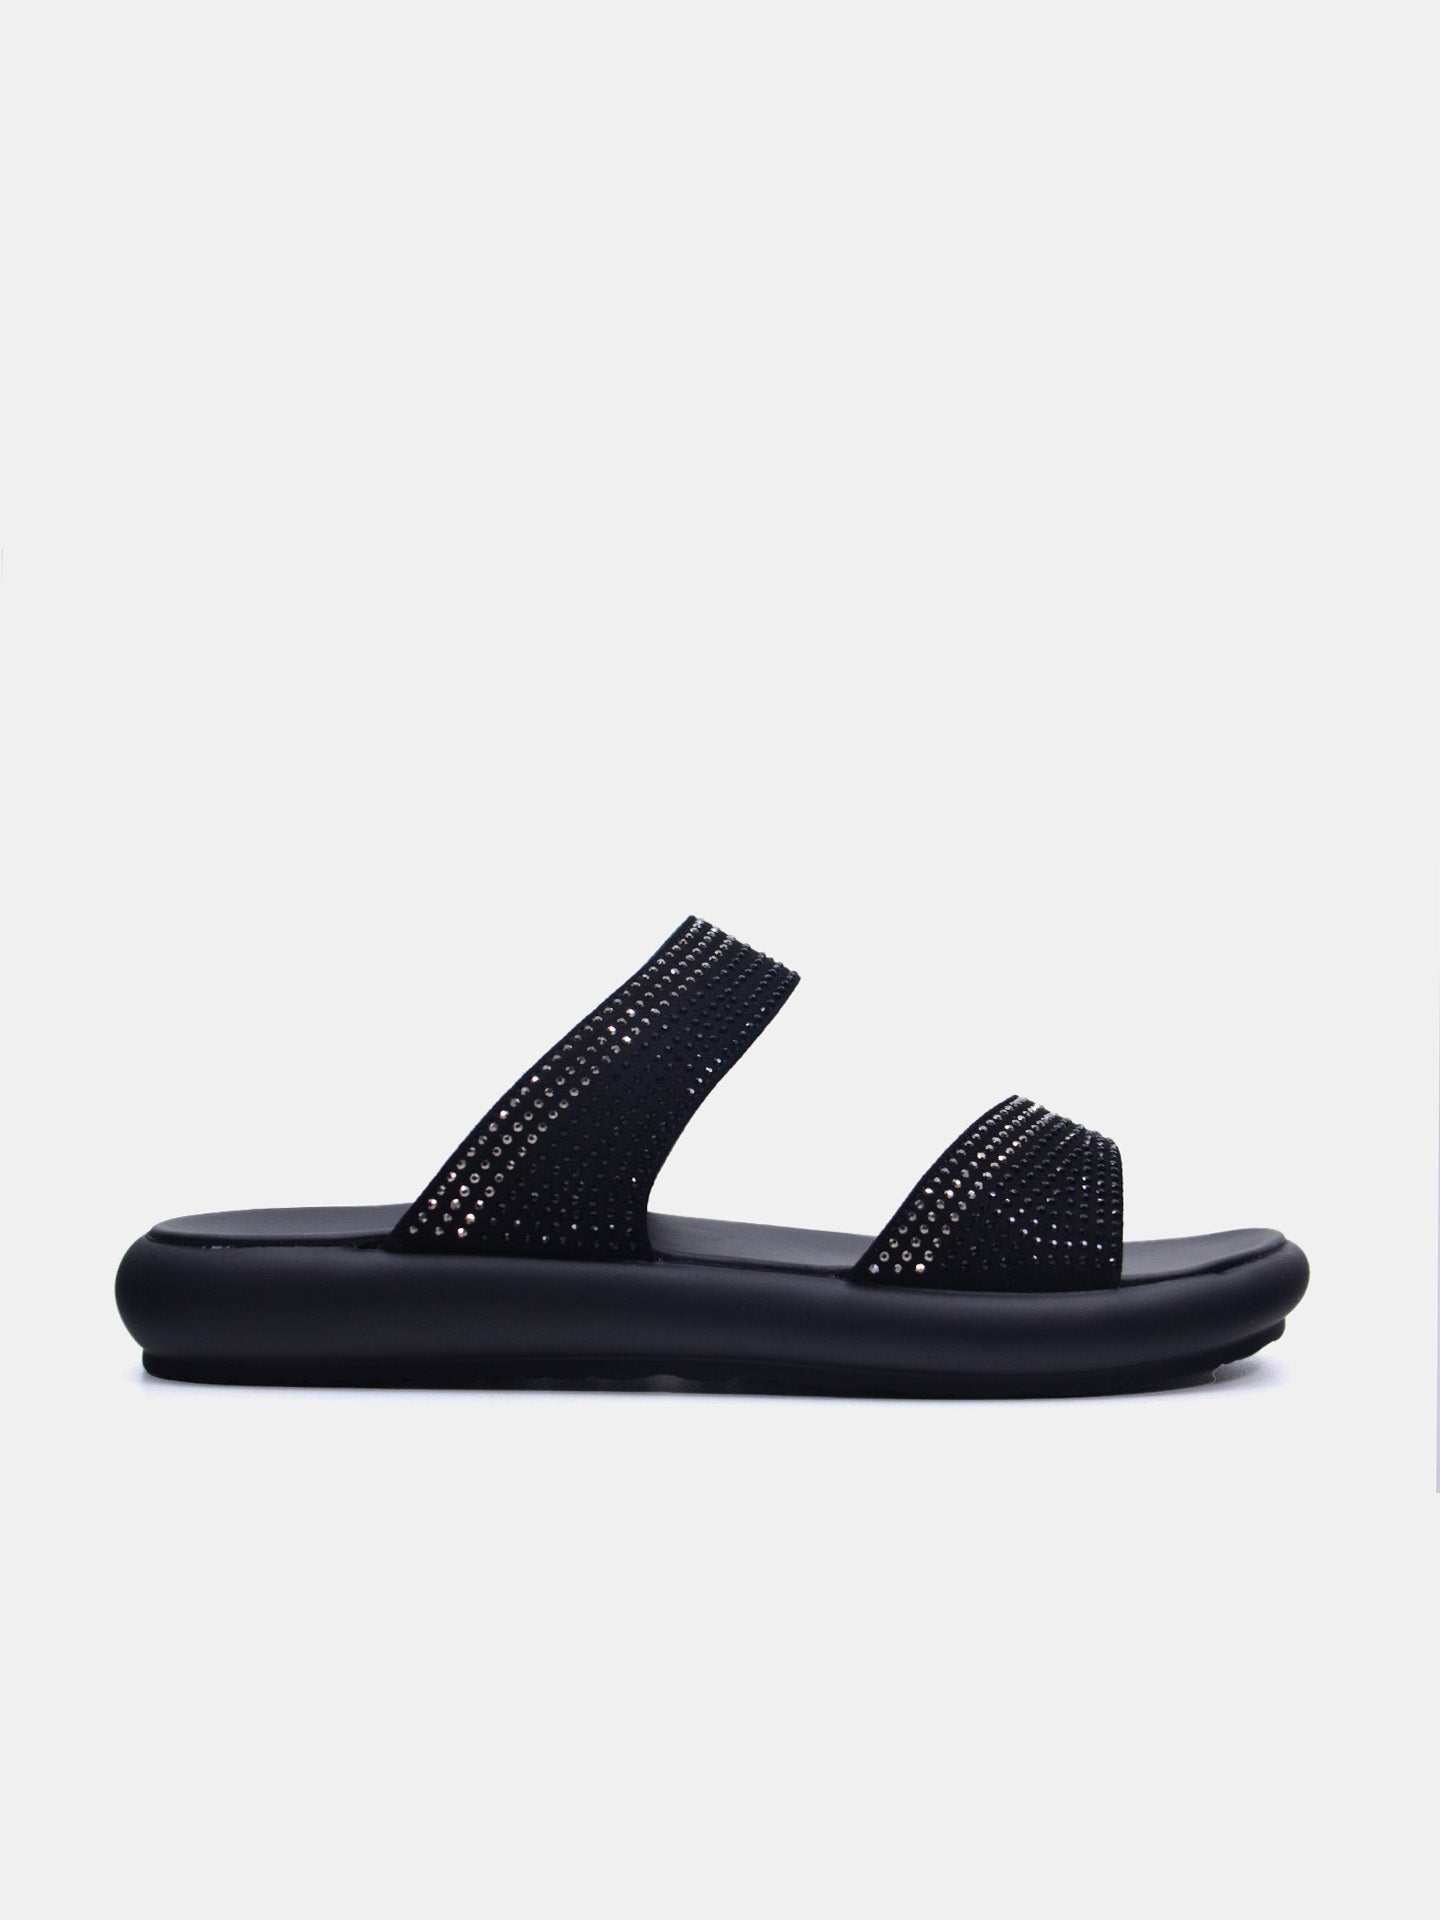 Michelle Morgan 114RC71I Women's Flat Sandals #color_Black